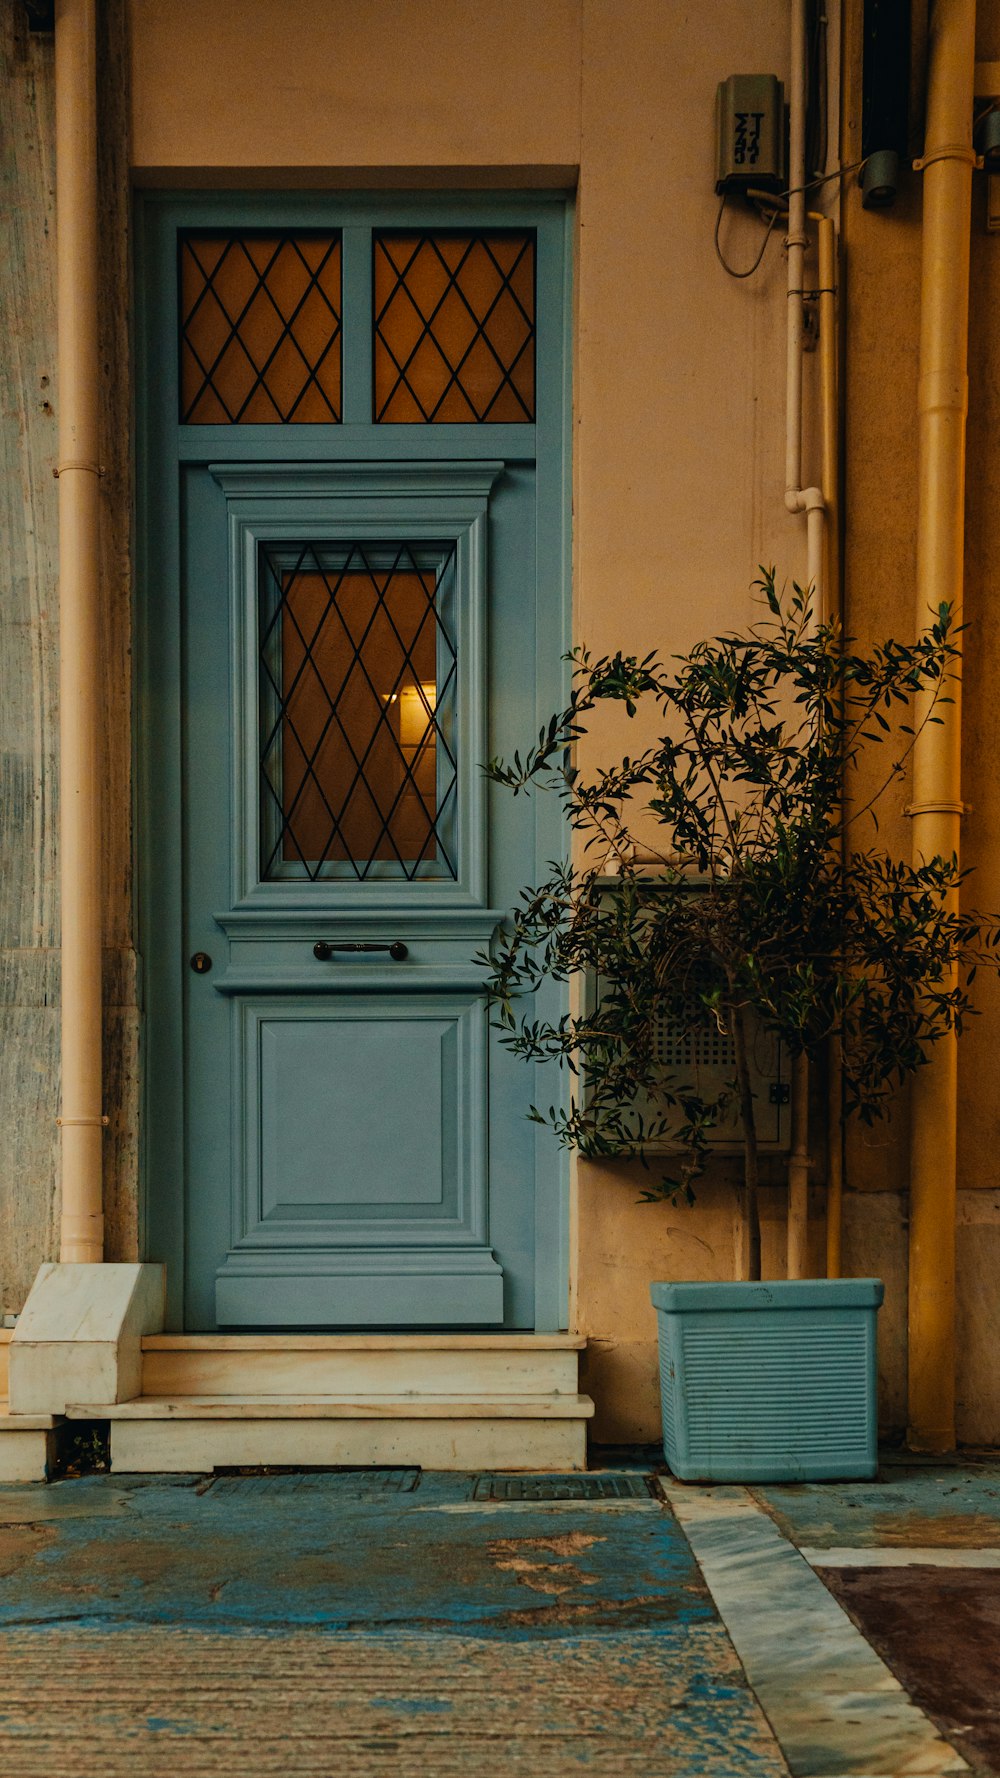 그 앞에 식물이 있는 파란 문